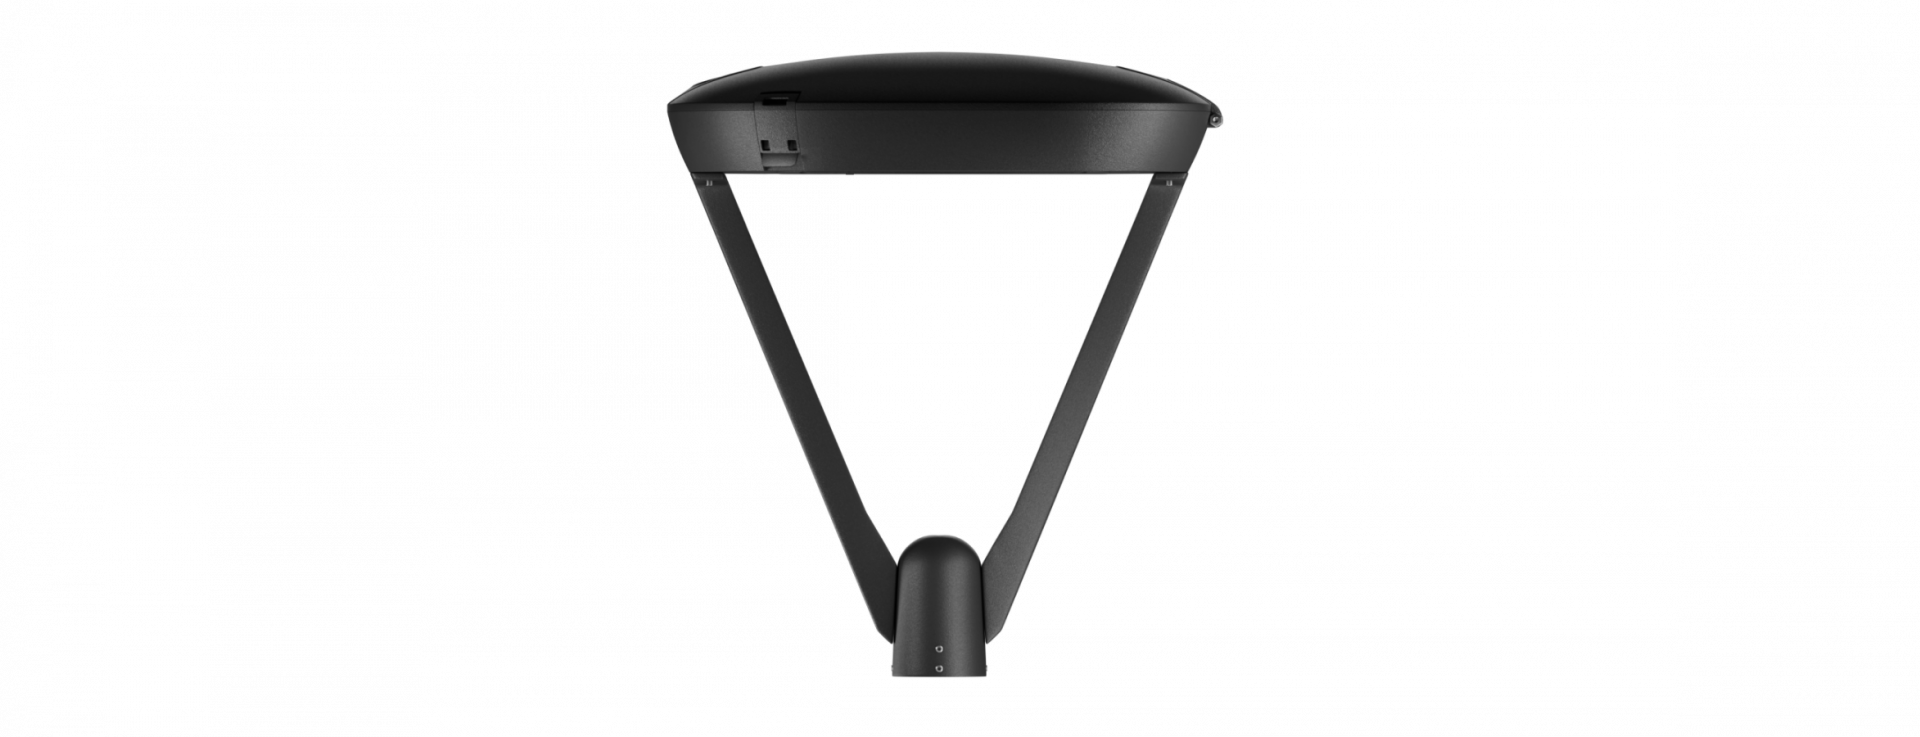 iCon-v2. Купить LED светильники iCON RADUGA от производителя. Заказать ландшафтный светодиодный светильник.